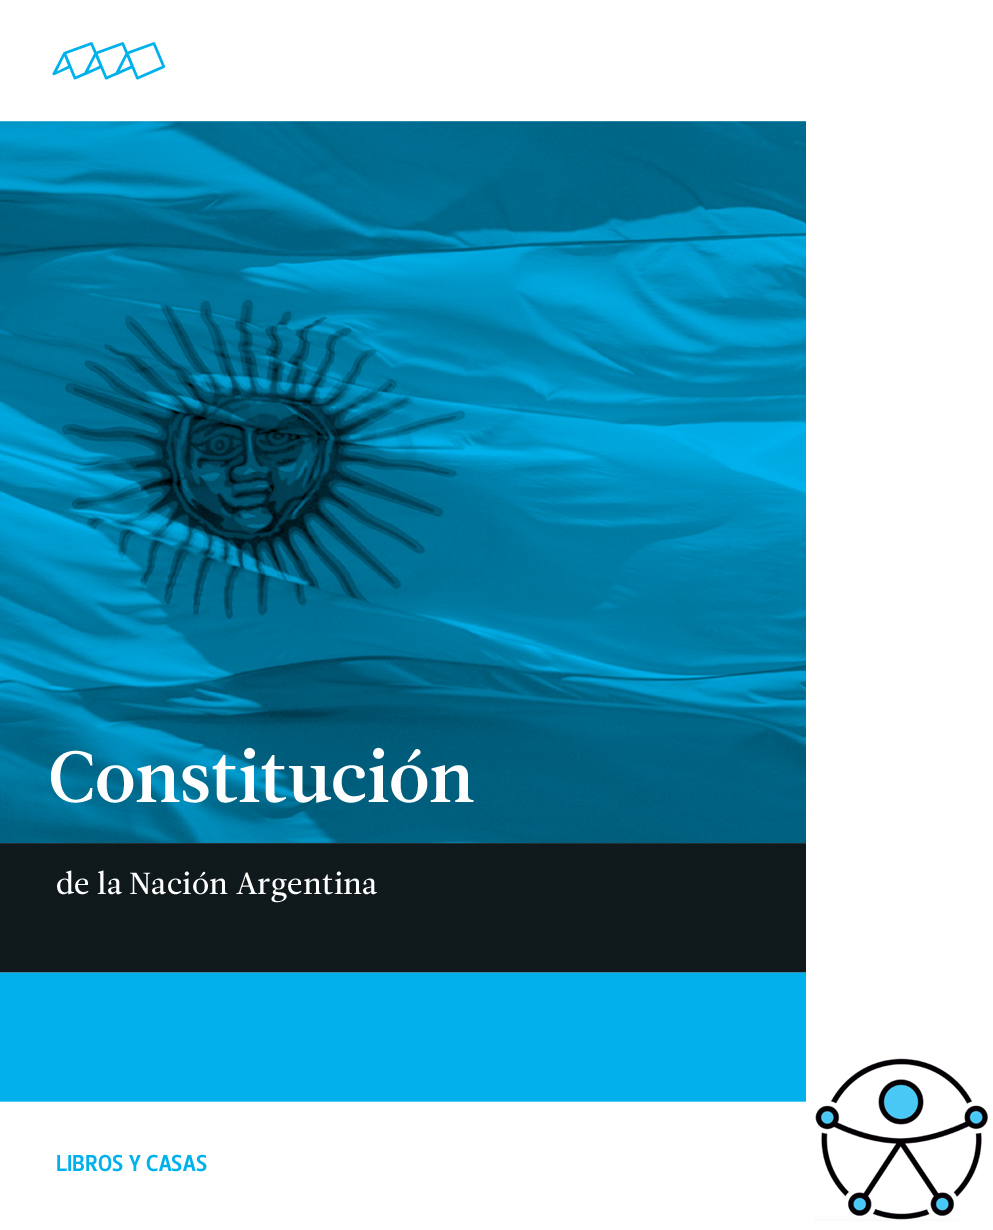 Constitución de la Rep. Argentina. Formato .epub y .rtf